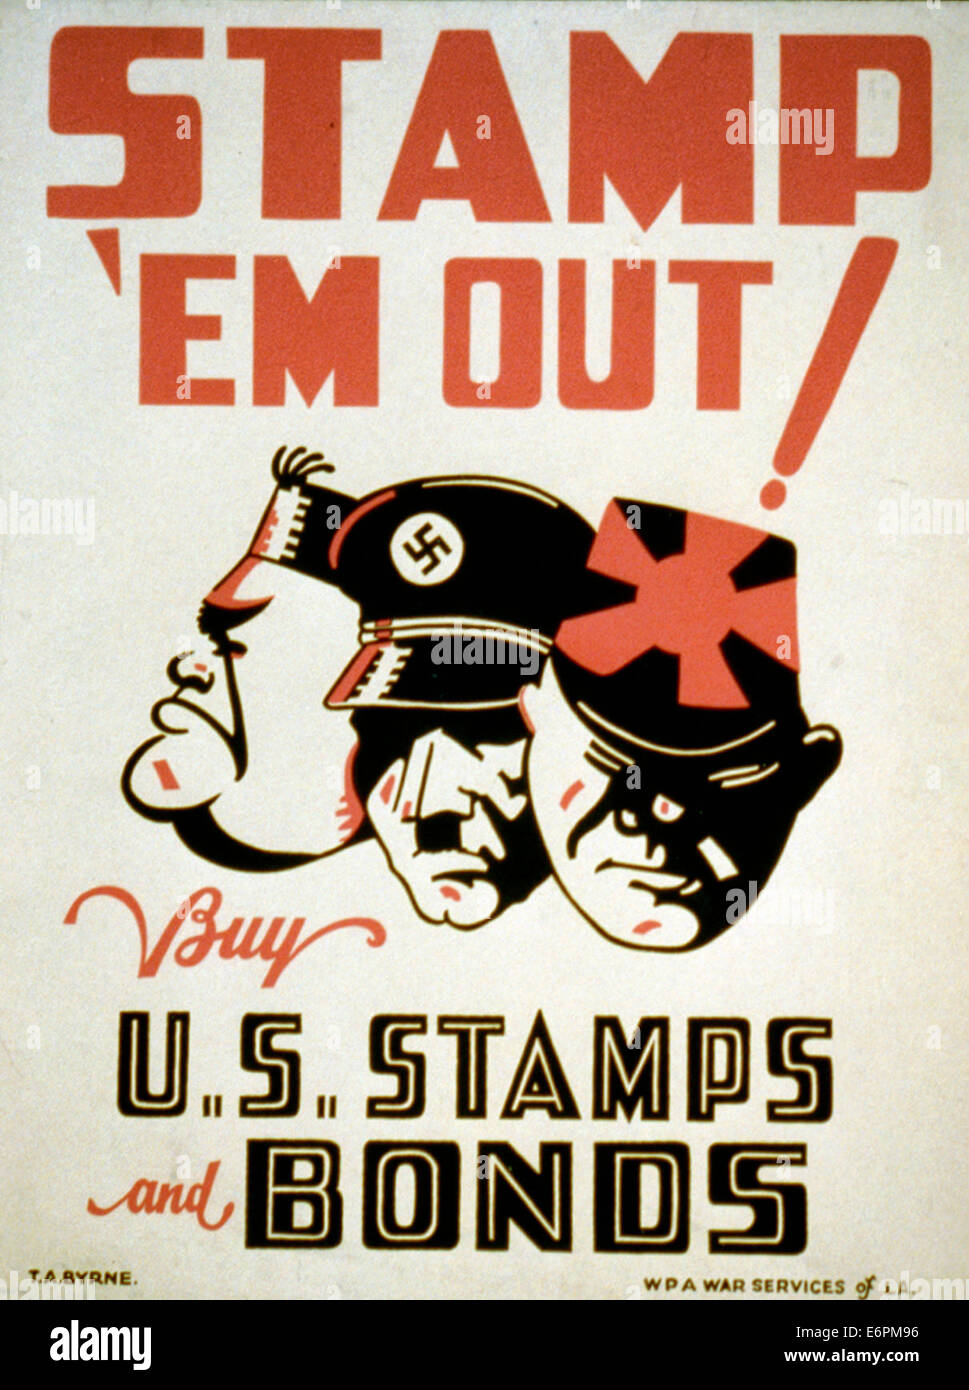 Stamp 'em out acheter des timbres des États-Unis et d'obligations - Affiche encourageant l'achat de timbres et des obligations de guerre pour soutenir l'effort de guerre, montrant les visages de Hitler, Mussolini et Hirohito, vers 1942 Banque D'Images